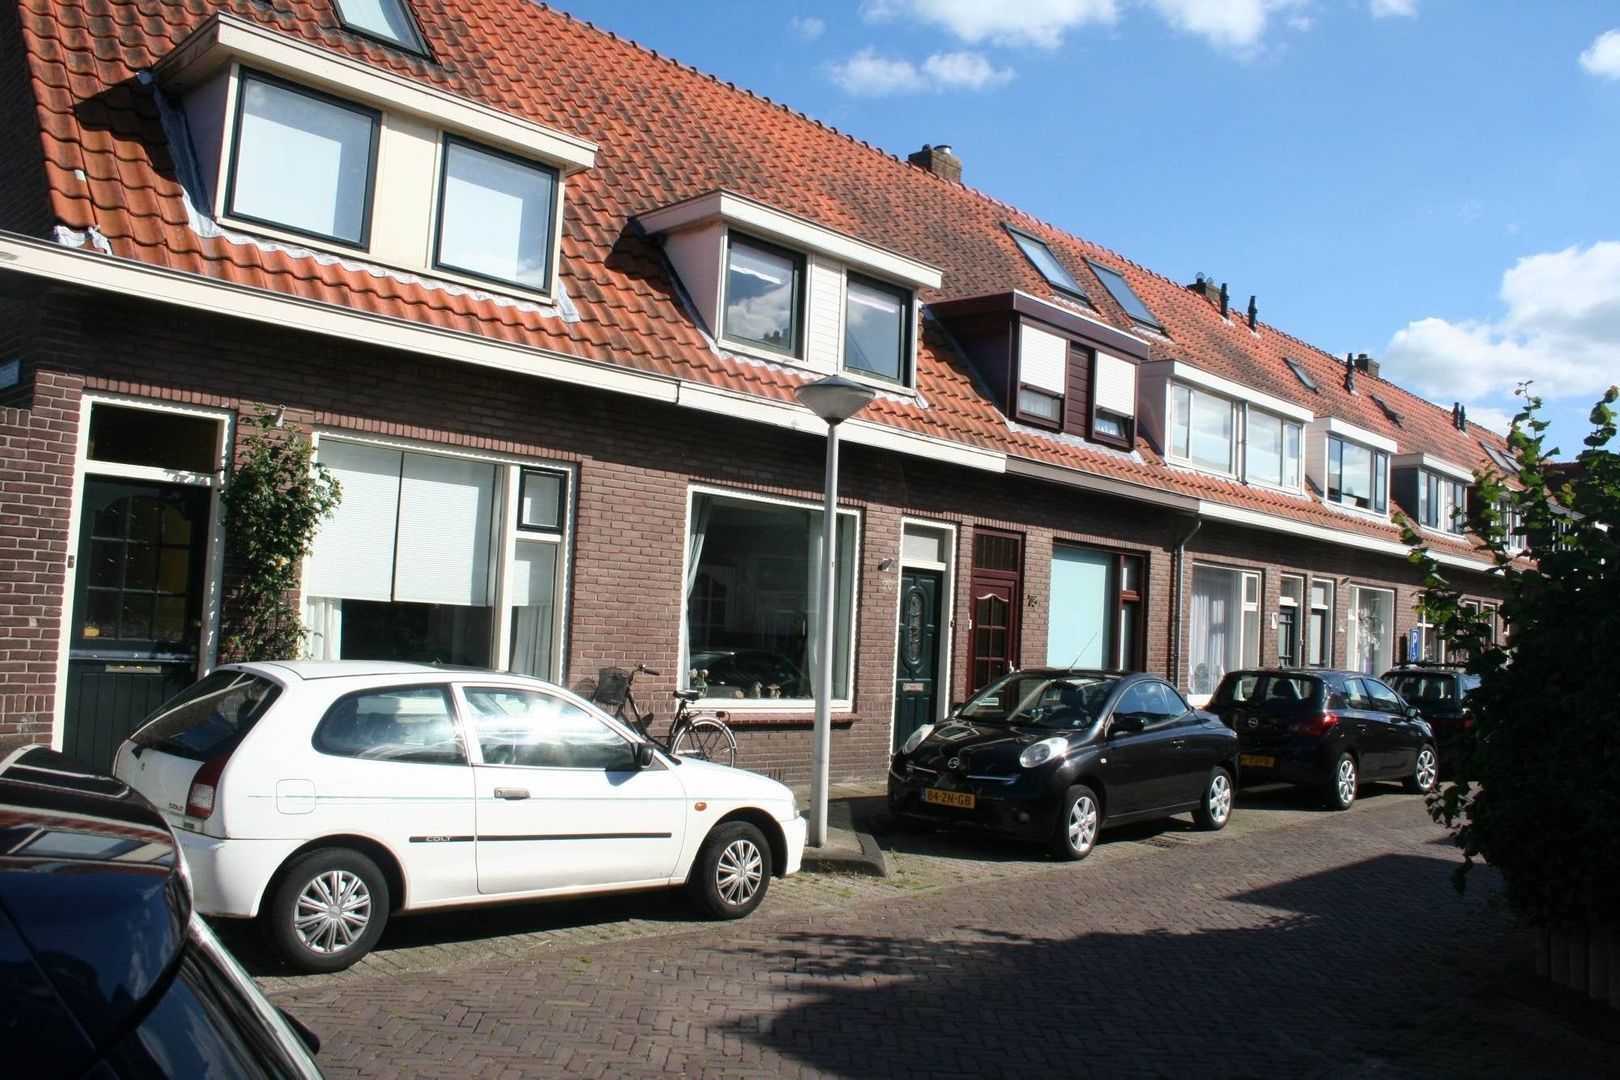 Bekijk foto 1/29 van house in Leiden